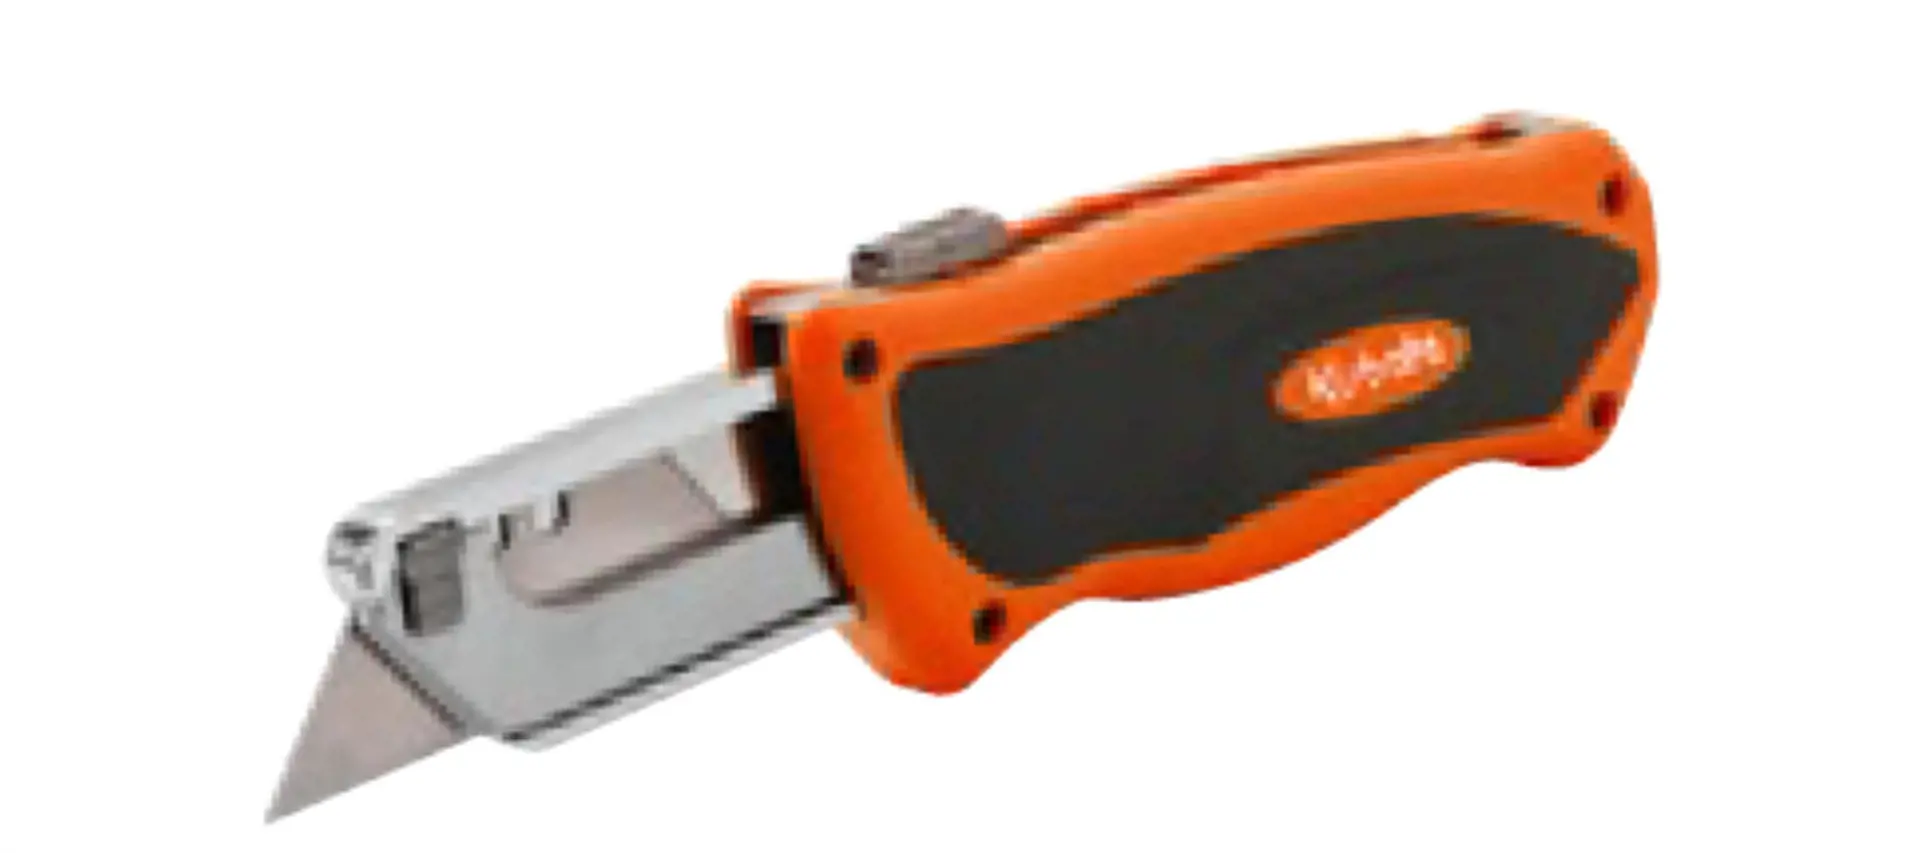 Image 2 for #77700-02485 Kubota Retractable Utility Knife